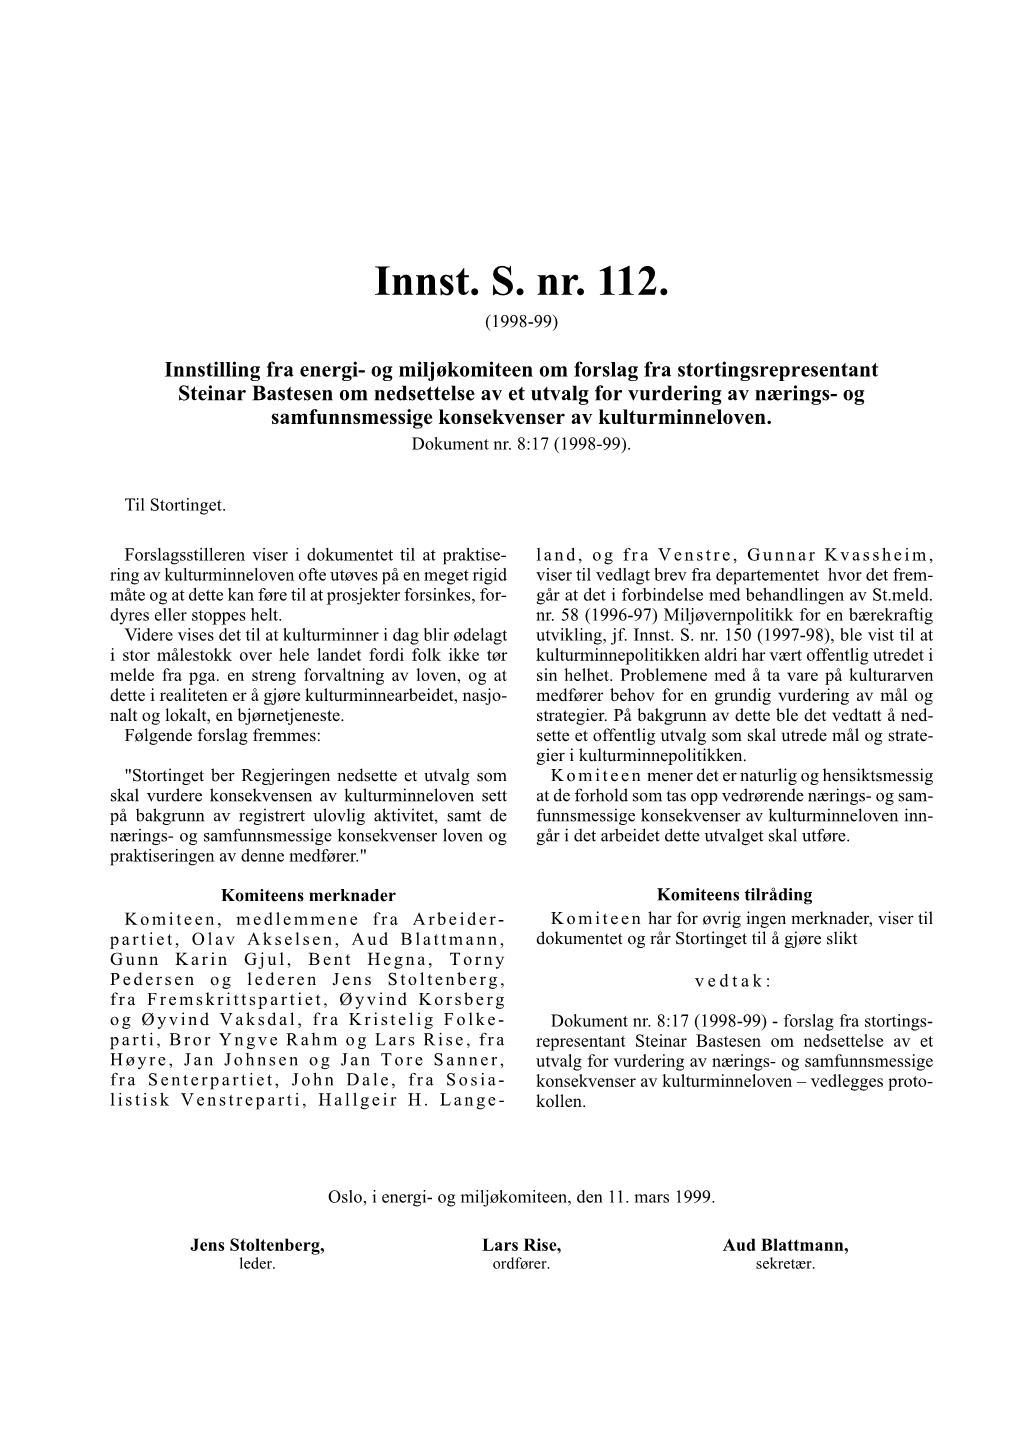 Innst. S. Nr. 112. (1998-99)